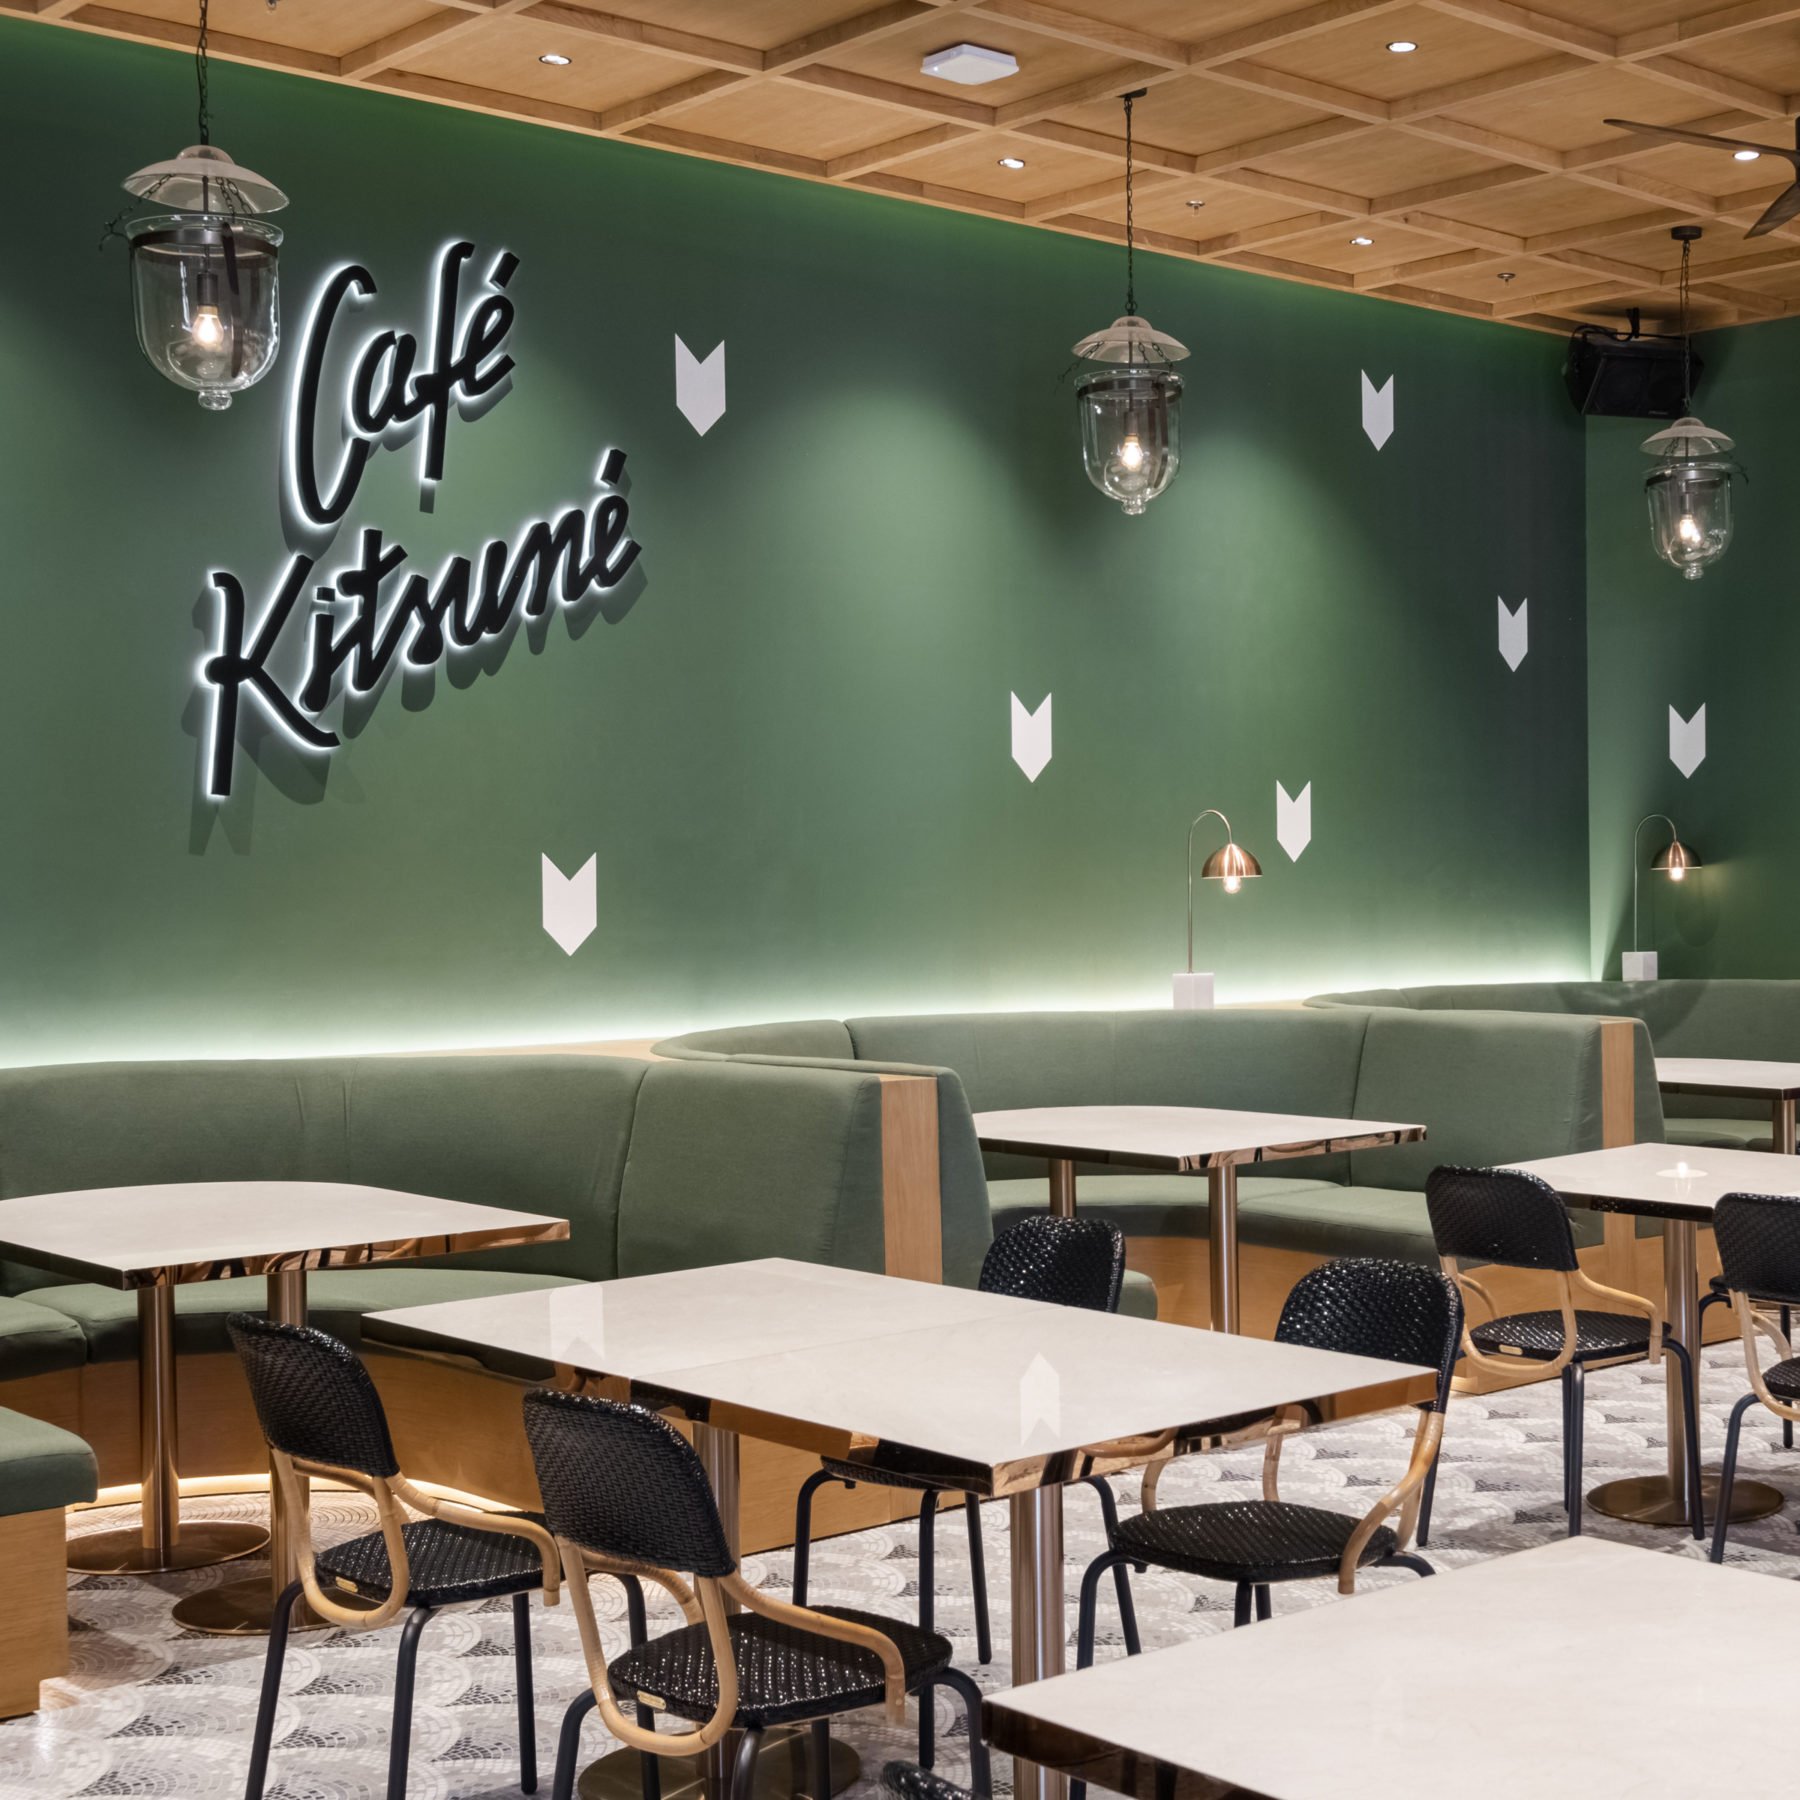 Find our Cafés | Maison Kitsuné